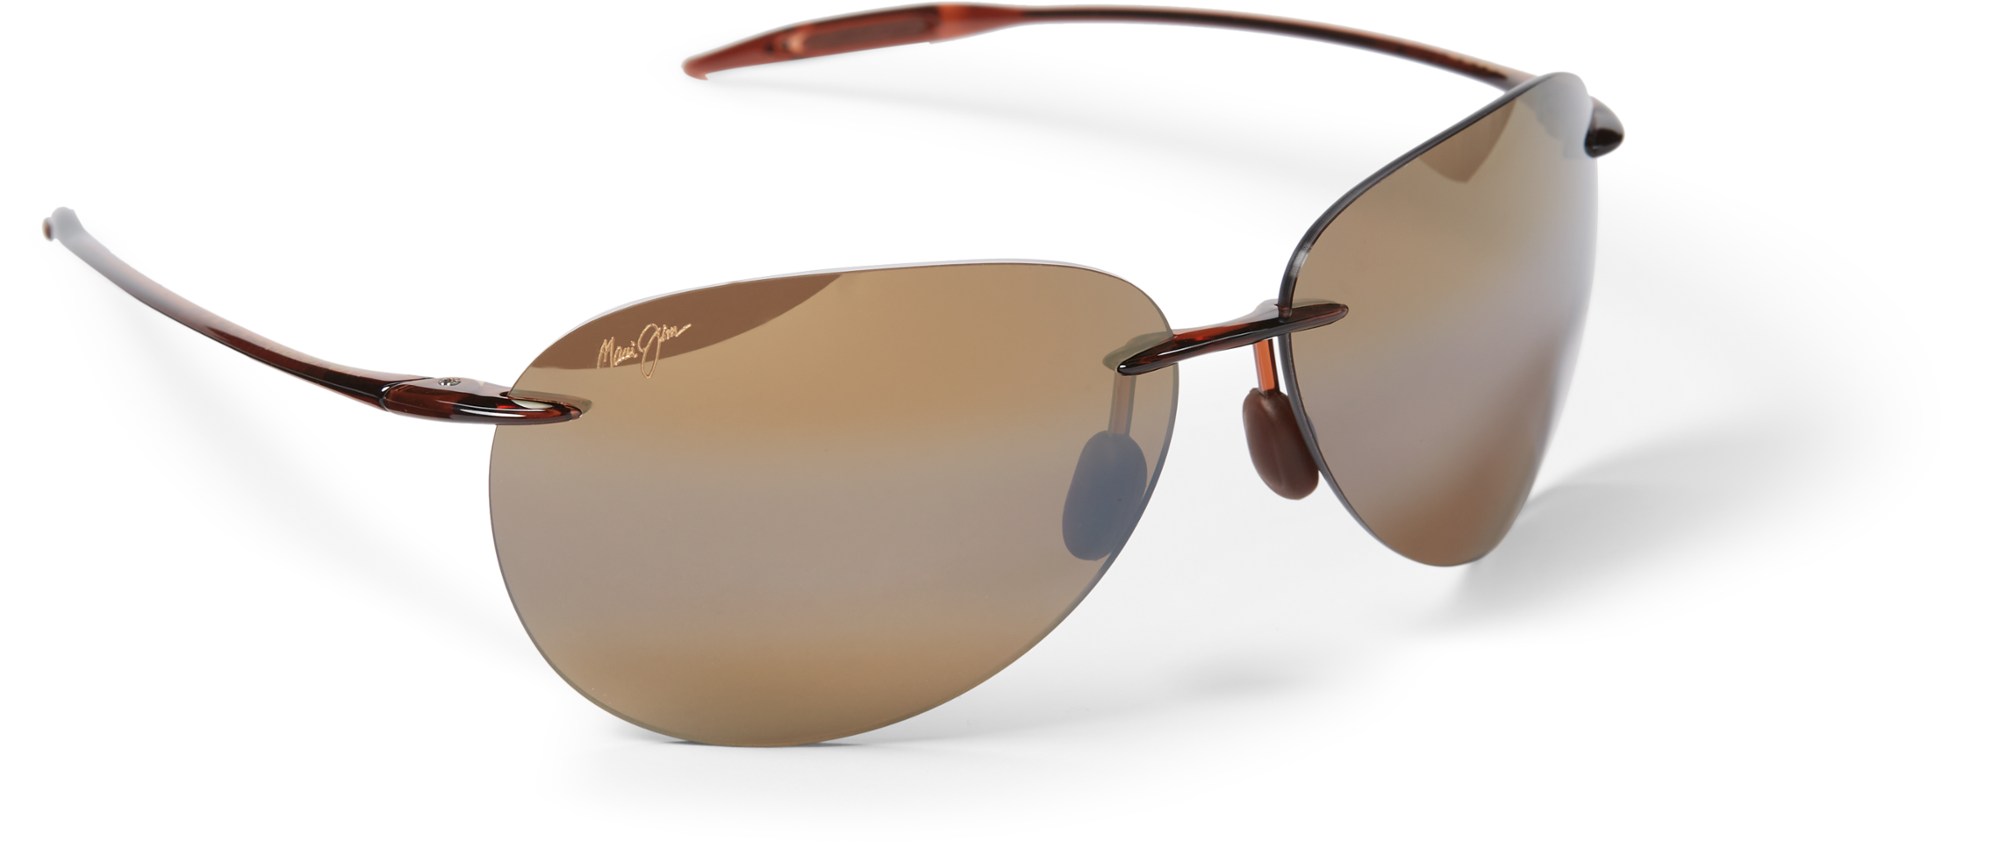 Поляризованные солнцезащитные очки Sugar Beach Maui Jim, коричневый maui nourish